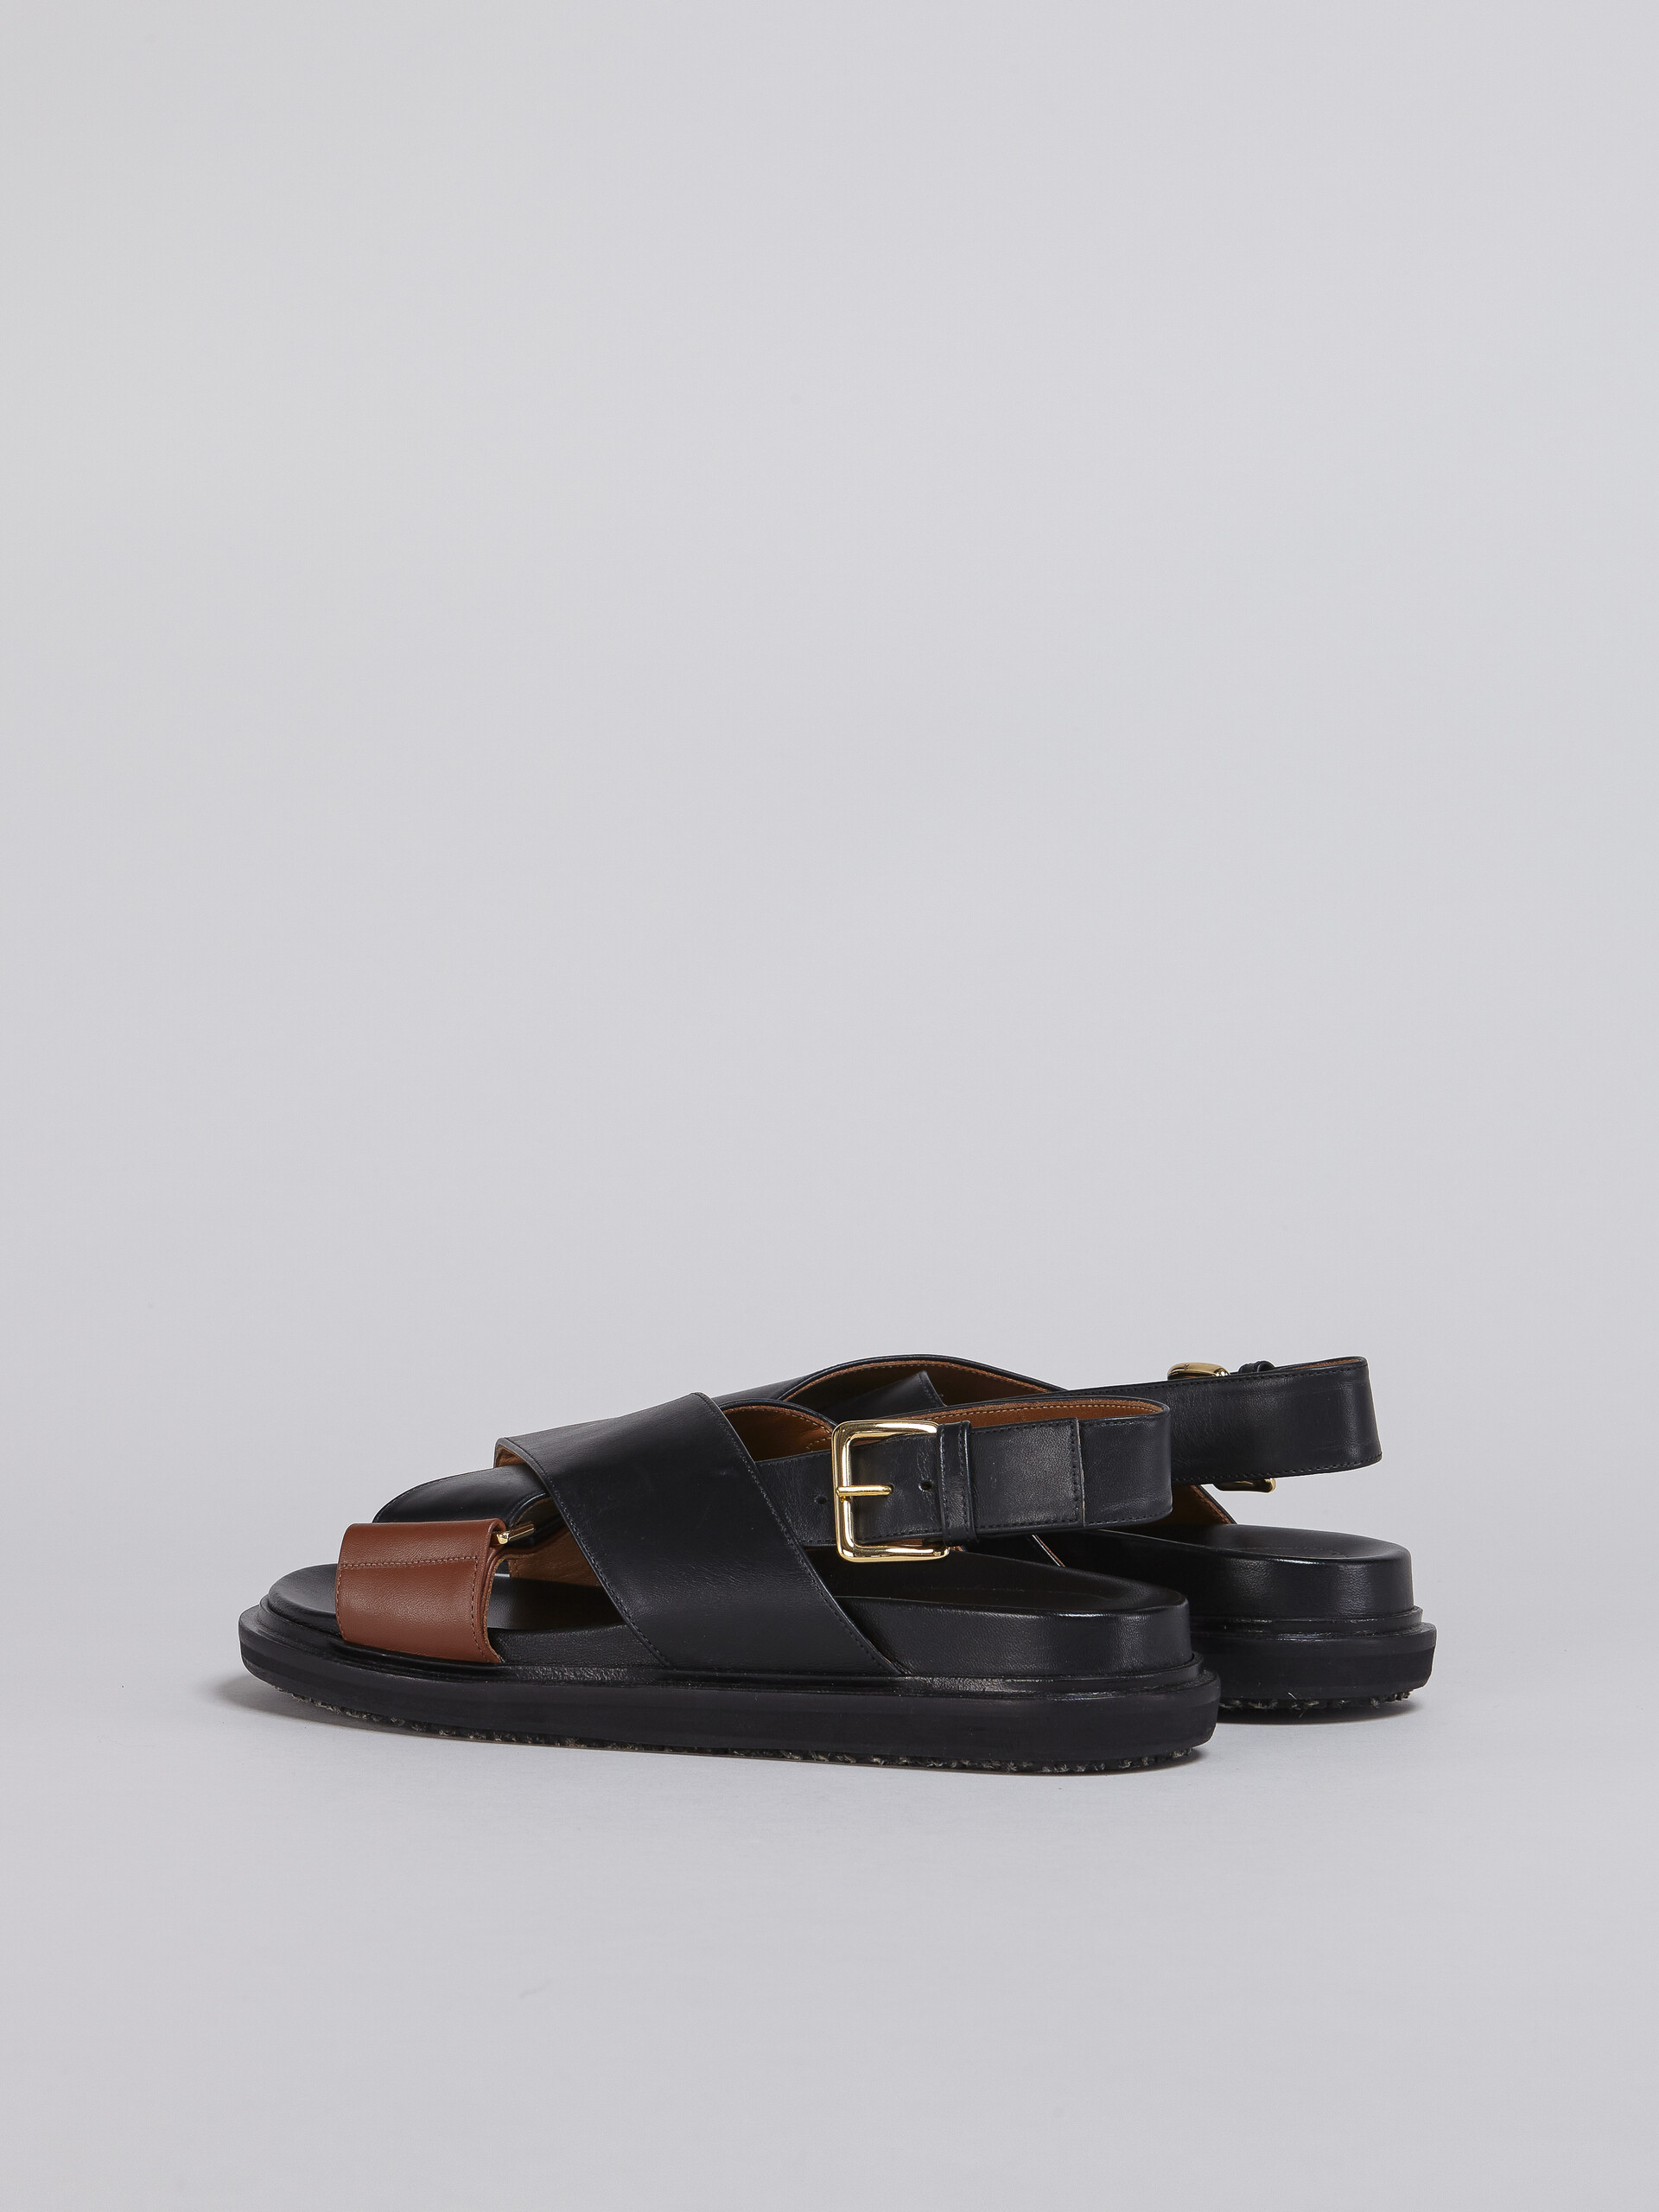 블랙 및 브라운 가죽 퍼스베트 - Sandals - Image 3